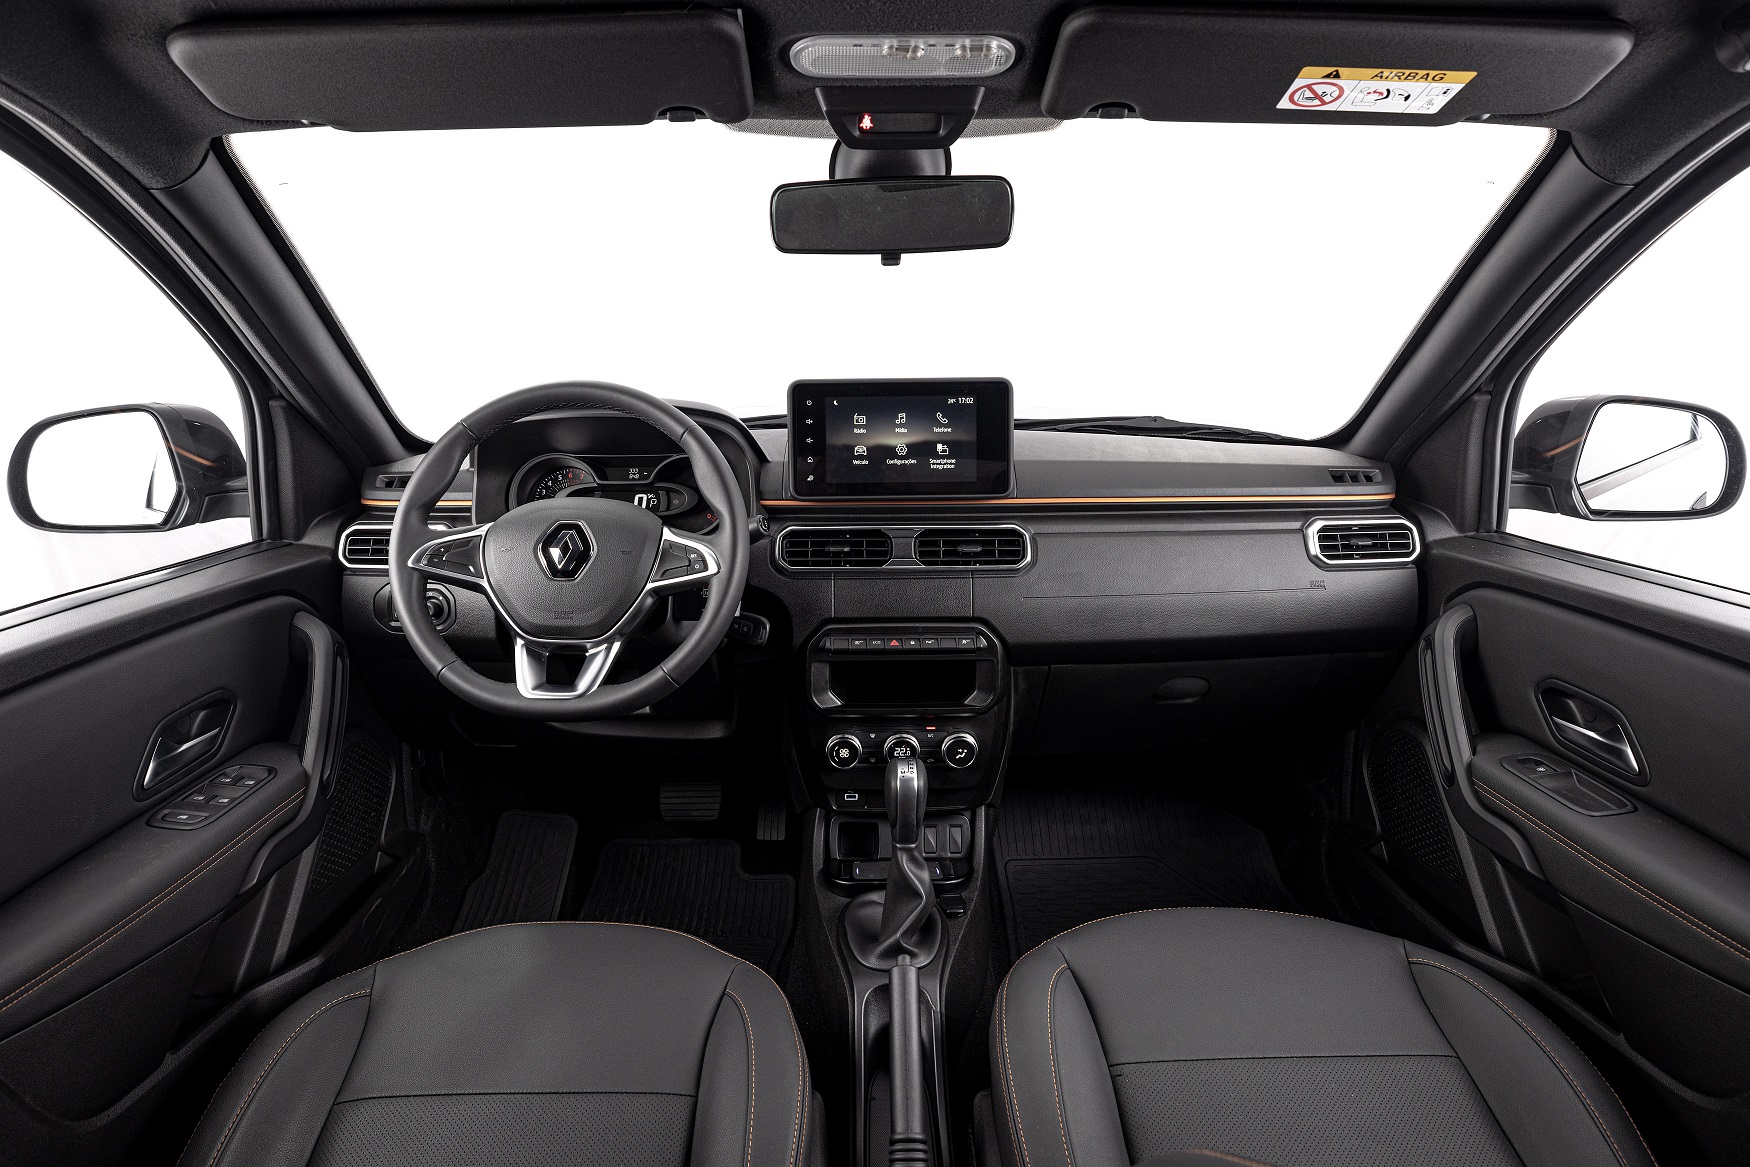  Renault Duster recebeu novo painel com quadro de instrumentos redesenhado e multimídia de 8"